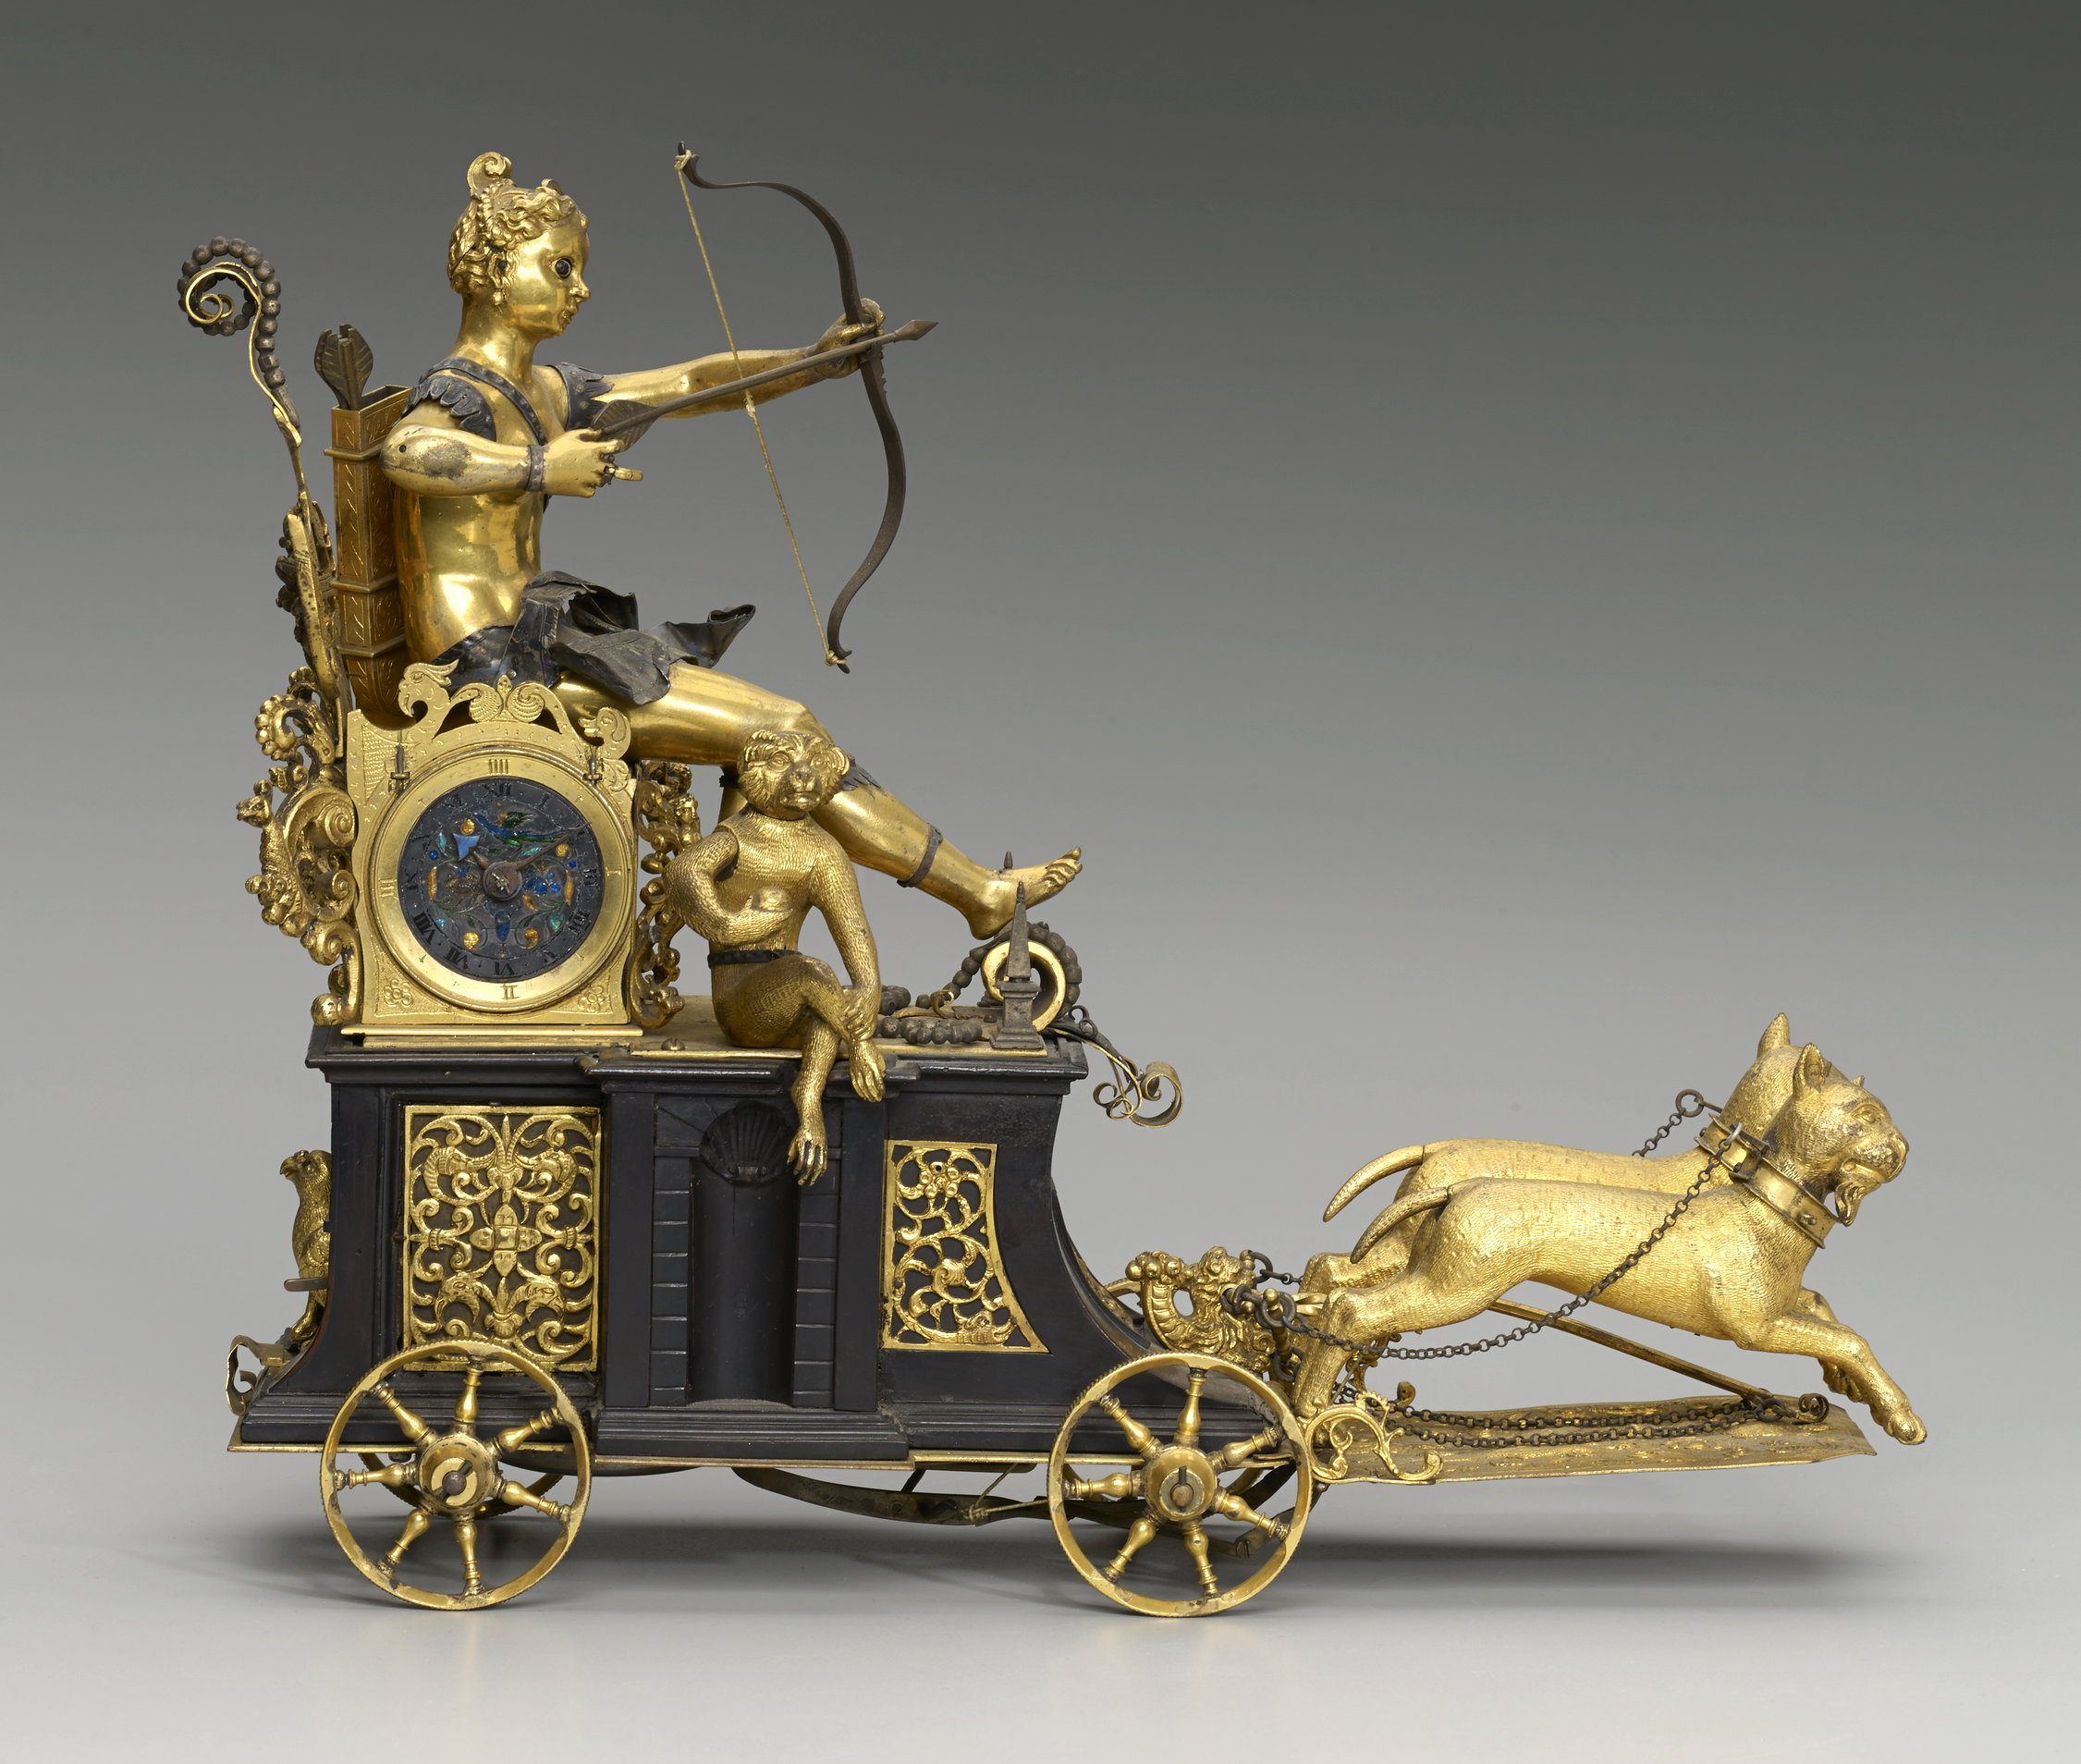 Une horloge automate mobile qui tire des flèches – 1610